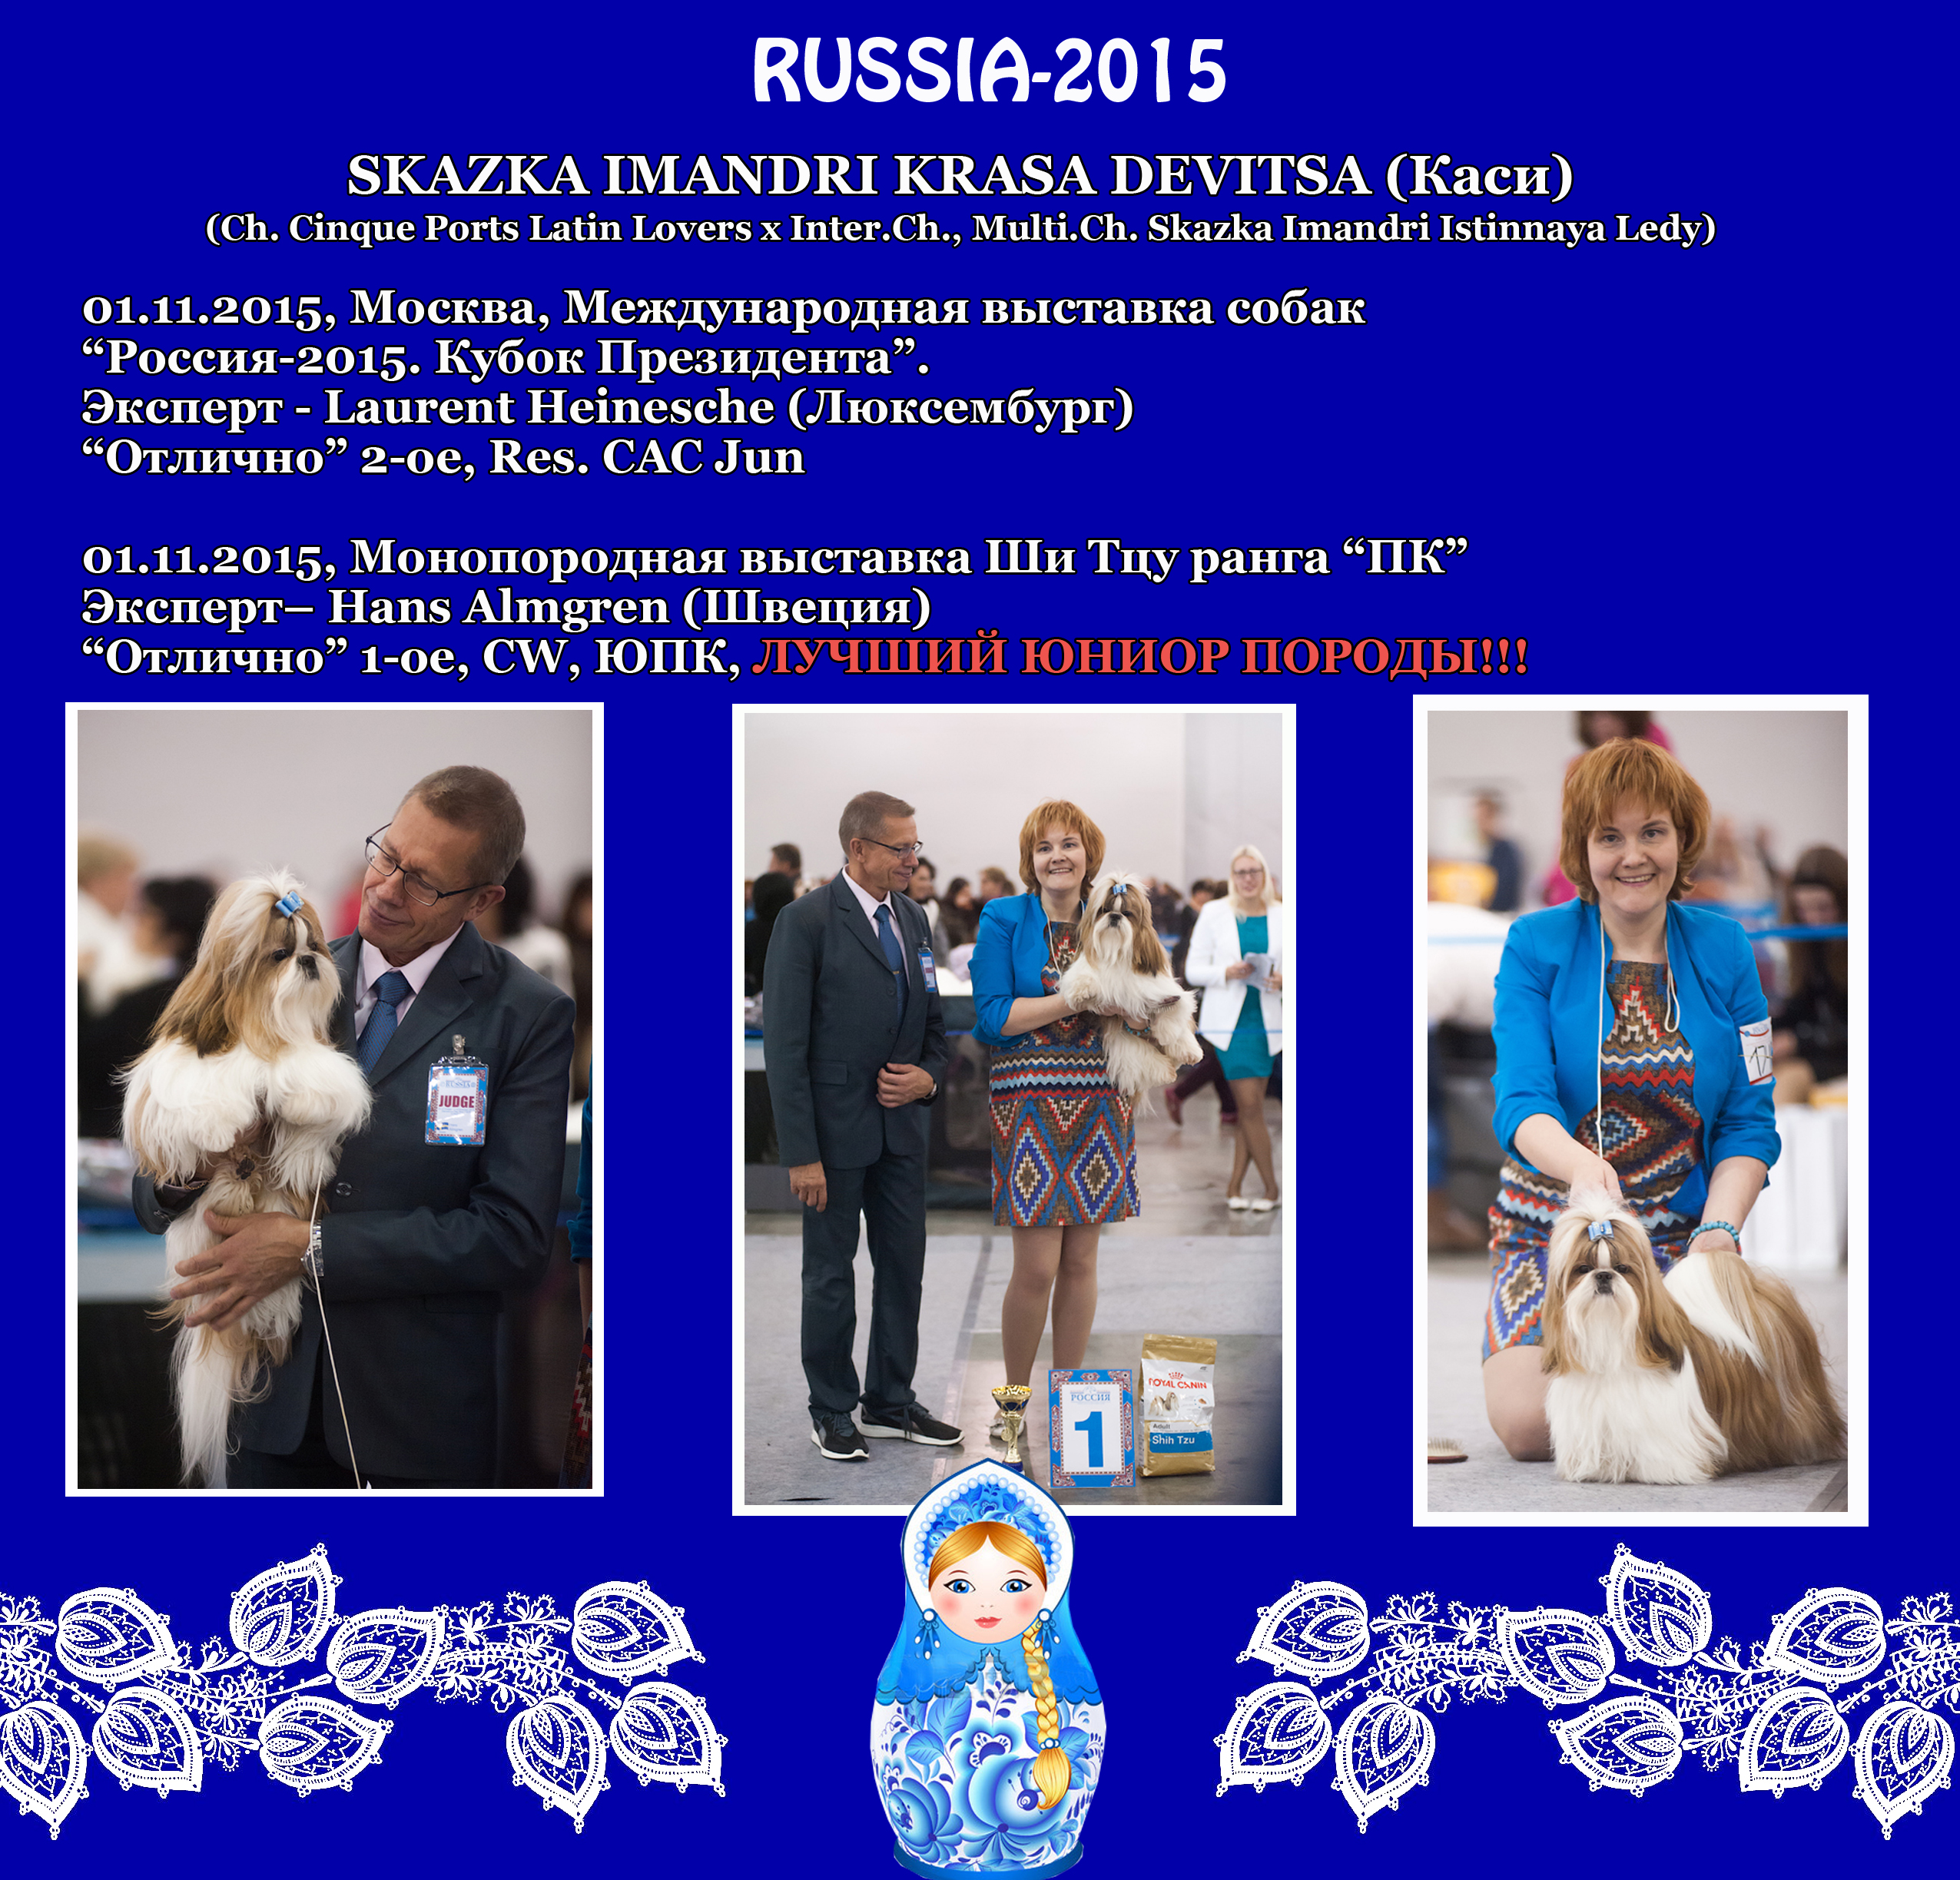 Результаты Каси (Skazka Imandri Krasa Devitsa) на международной выставке "Россия-2015", проходившей 01 ноября 2015 г. в Москве